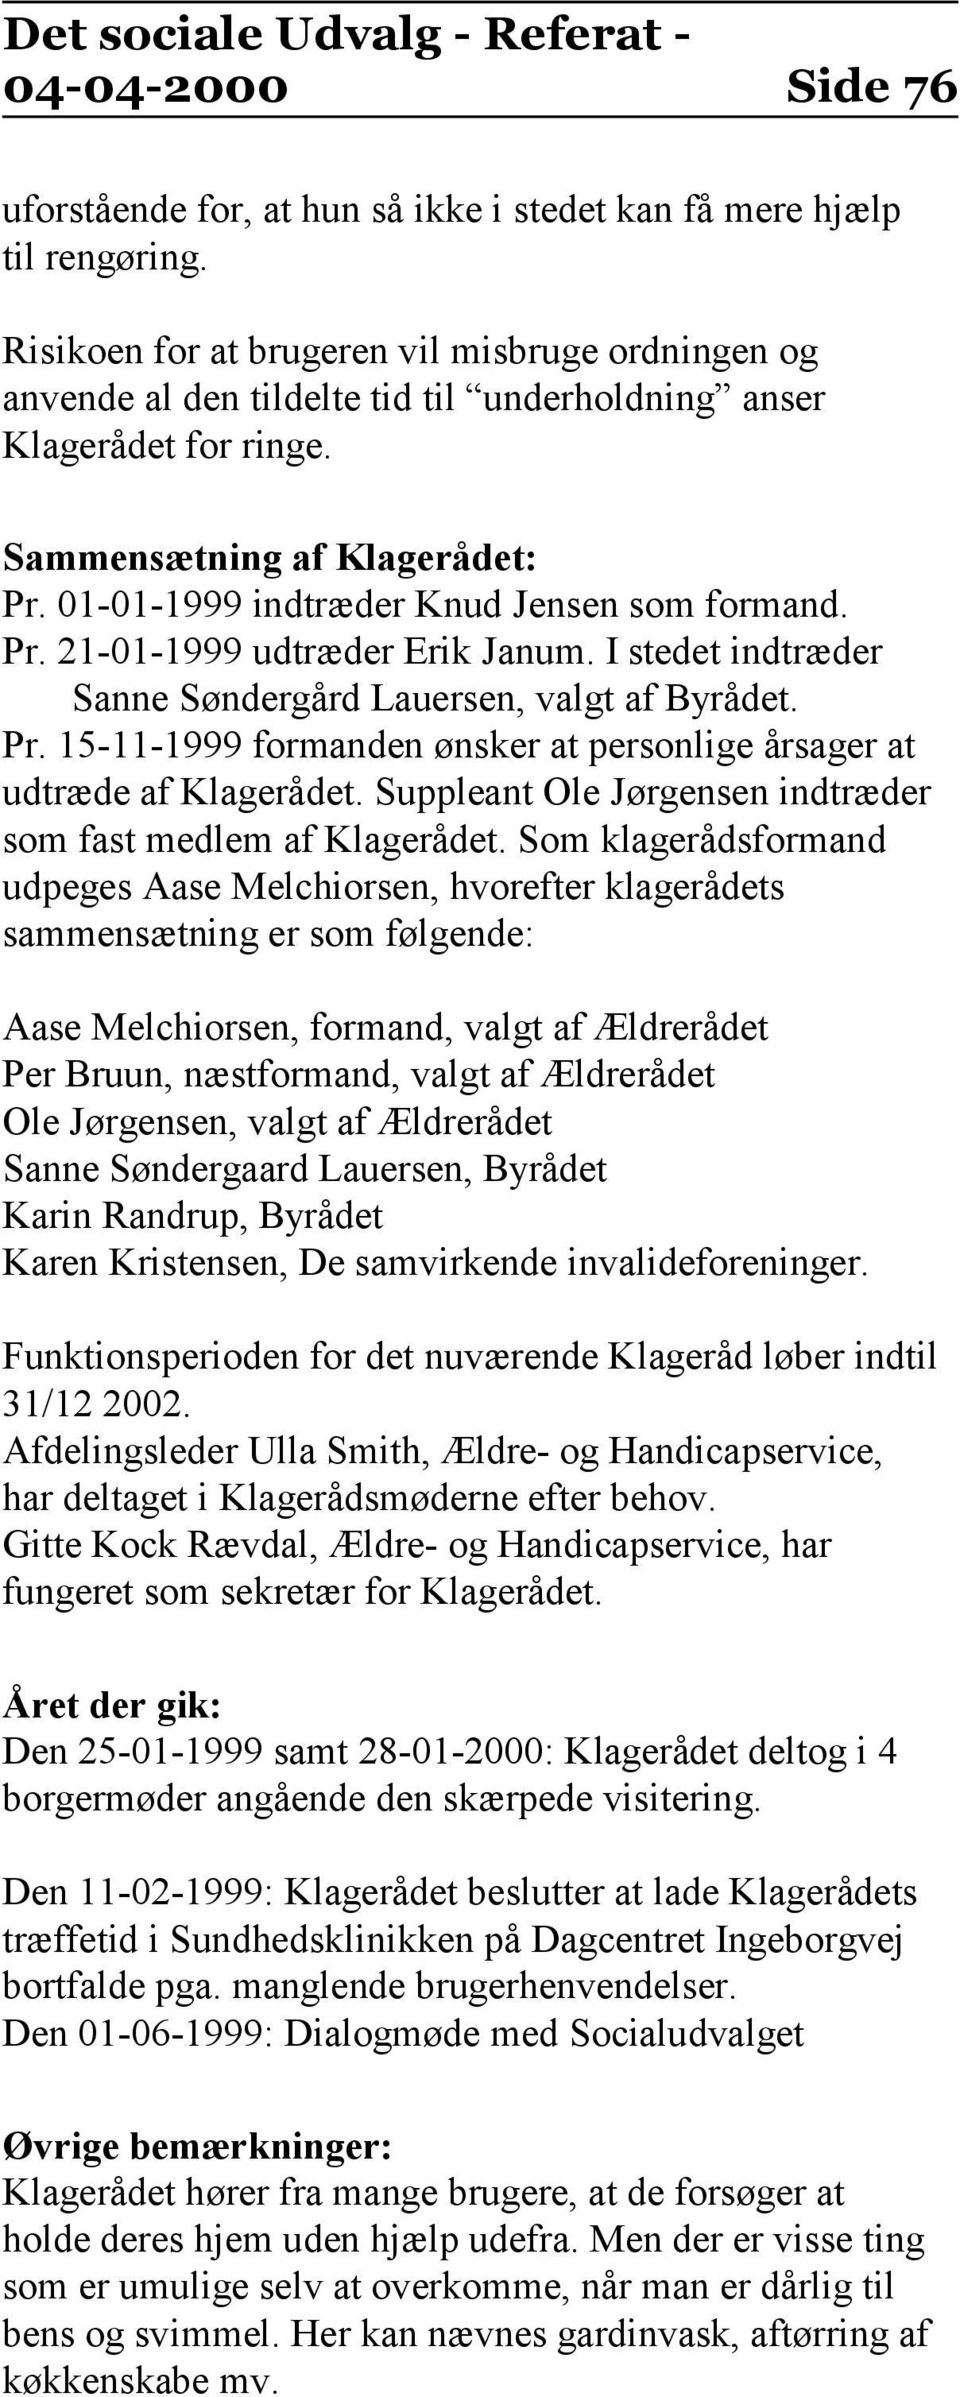 01-01-1999 indtræder Knud Jensen som formand. Pr. 21-01-1999 udtræder Erik Janum. I stedet indtræder Sanne Søndergård Lauersen, valgt af Byrådet. Pr. 15-11-1999 formanden ønsker at personlige årsager at udtræde af Klagerådet.